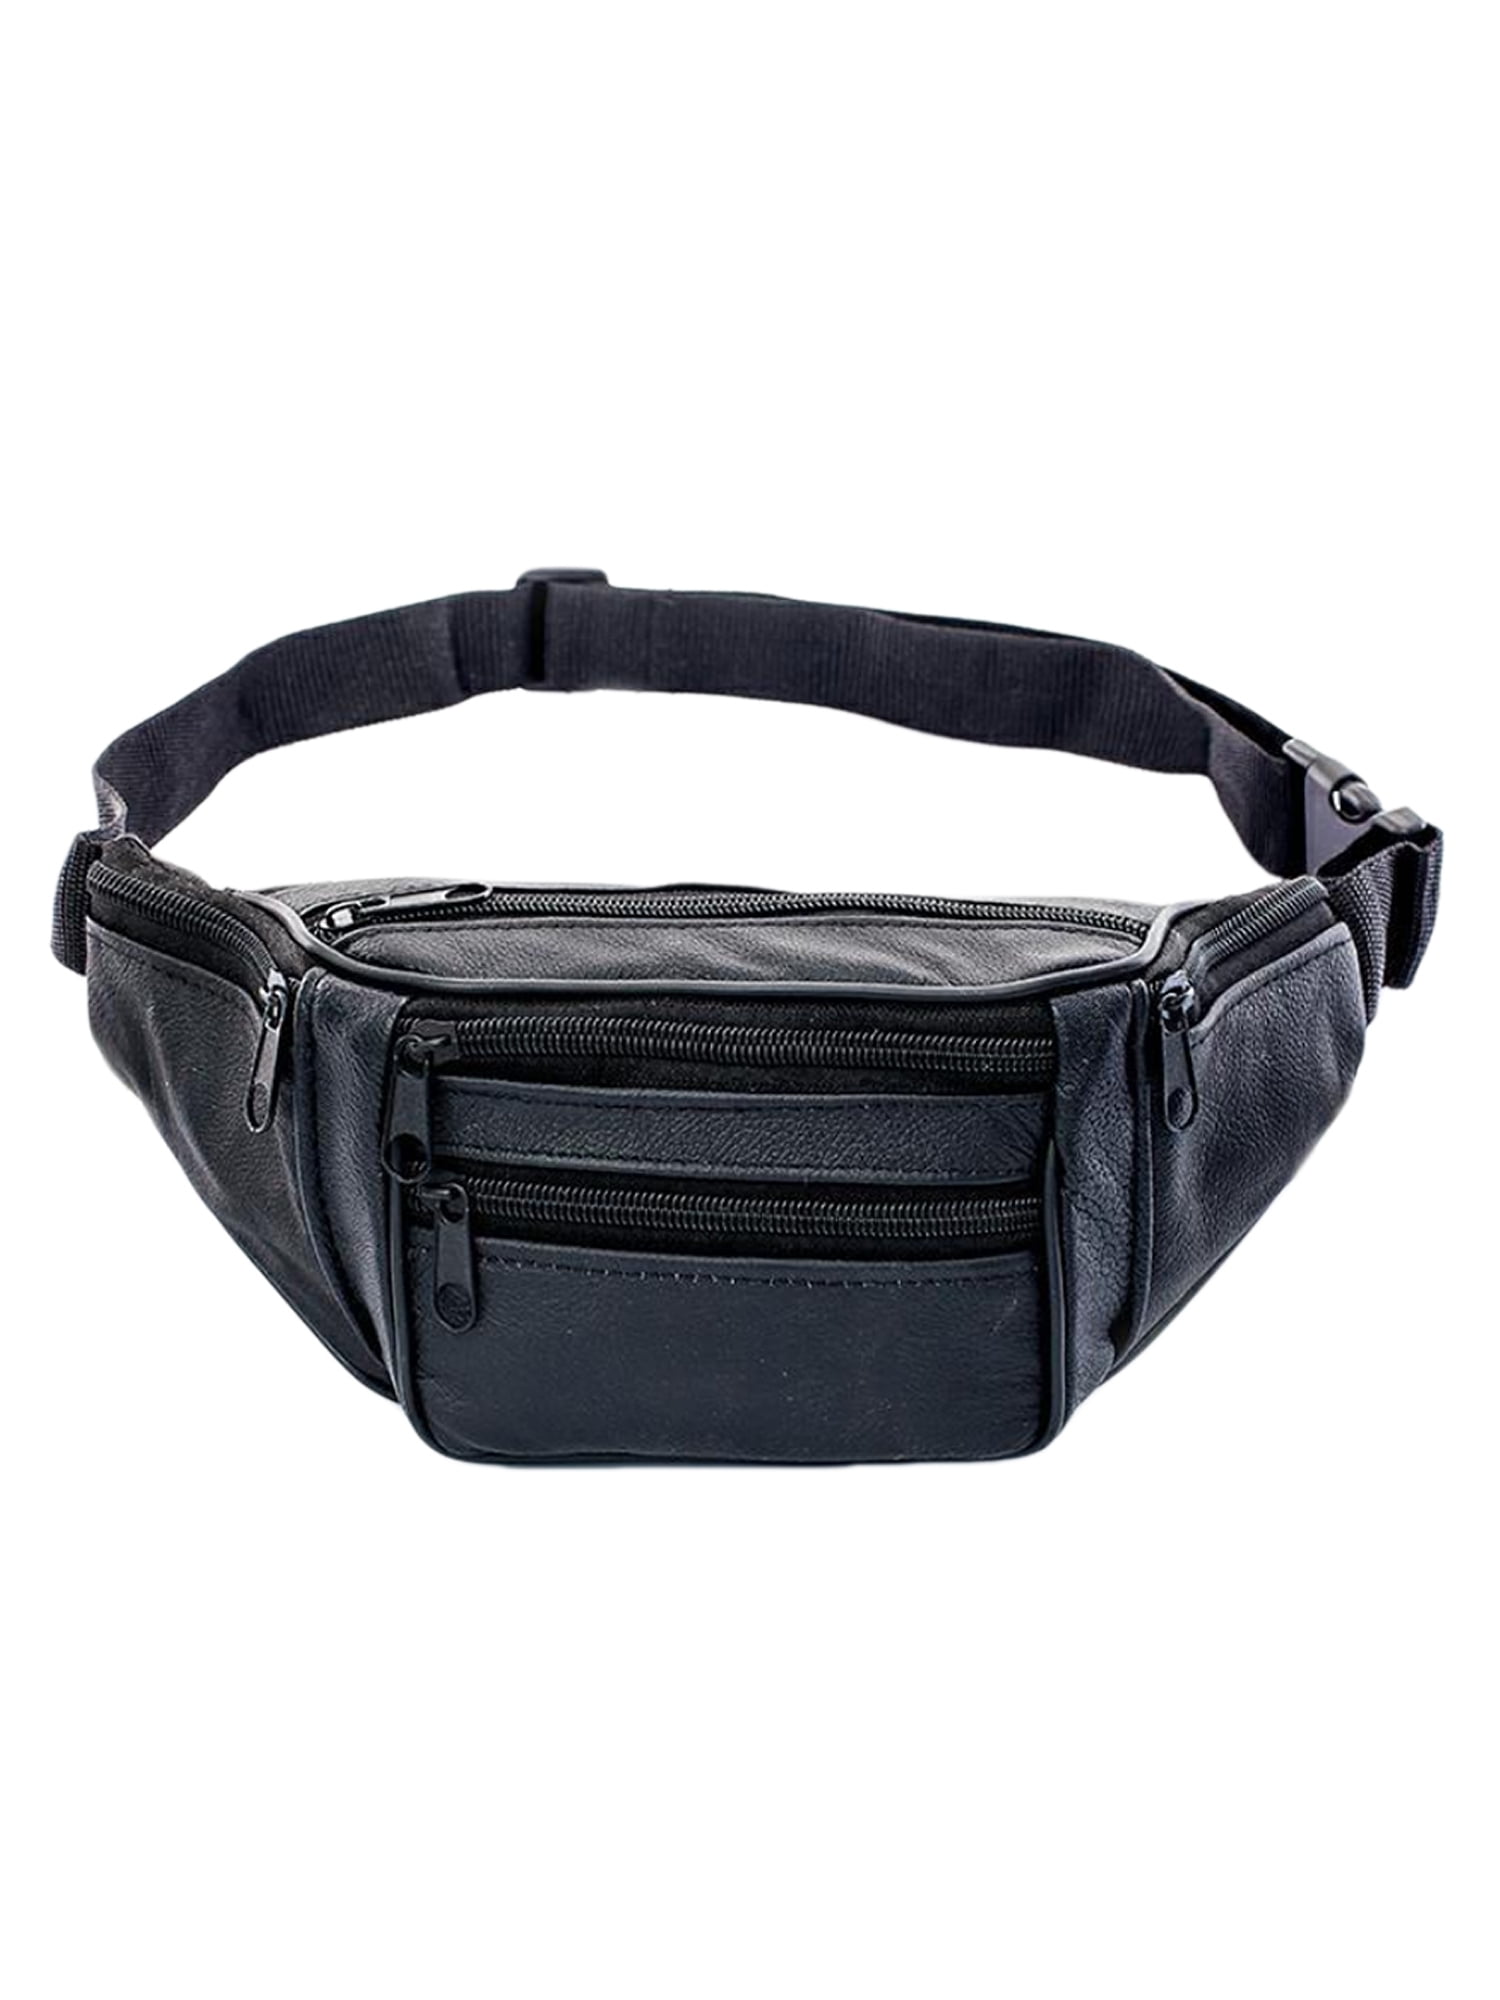 Women's Waist Fanny Pack Belt Bag Pouch Travel Zip Hip Purse Crossbody Handbags 